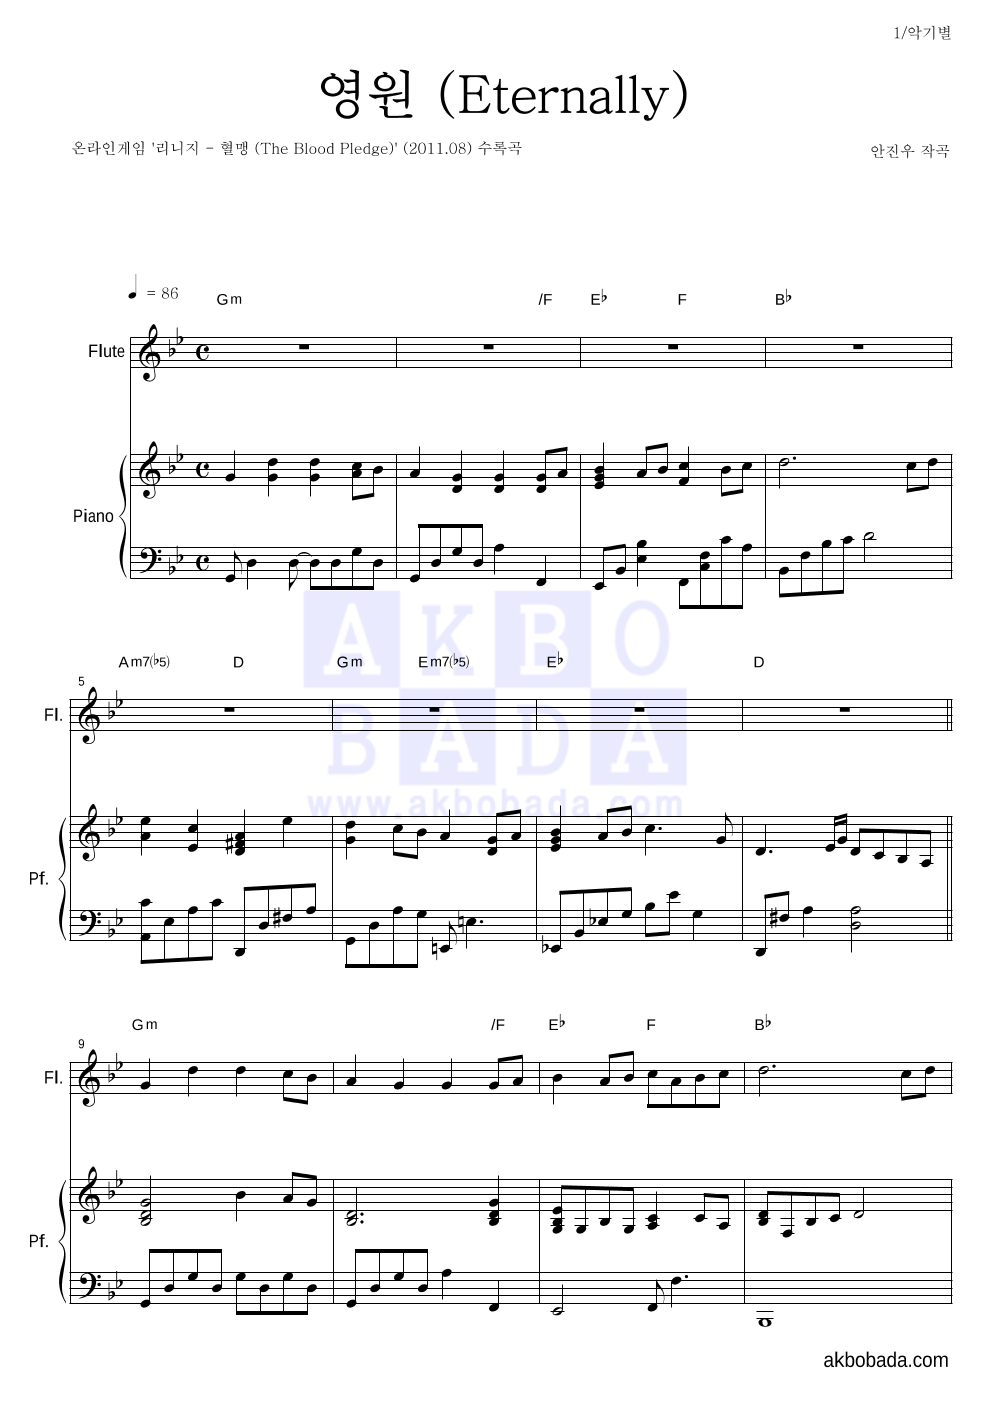 리니지 OST - 영원 (Eternally) 플룻&피아노 악보 